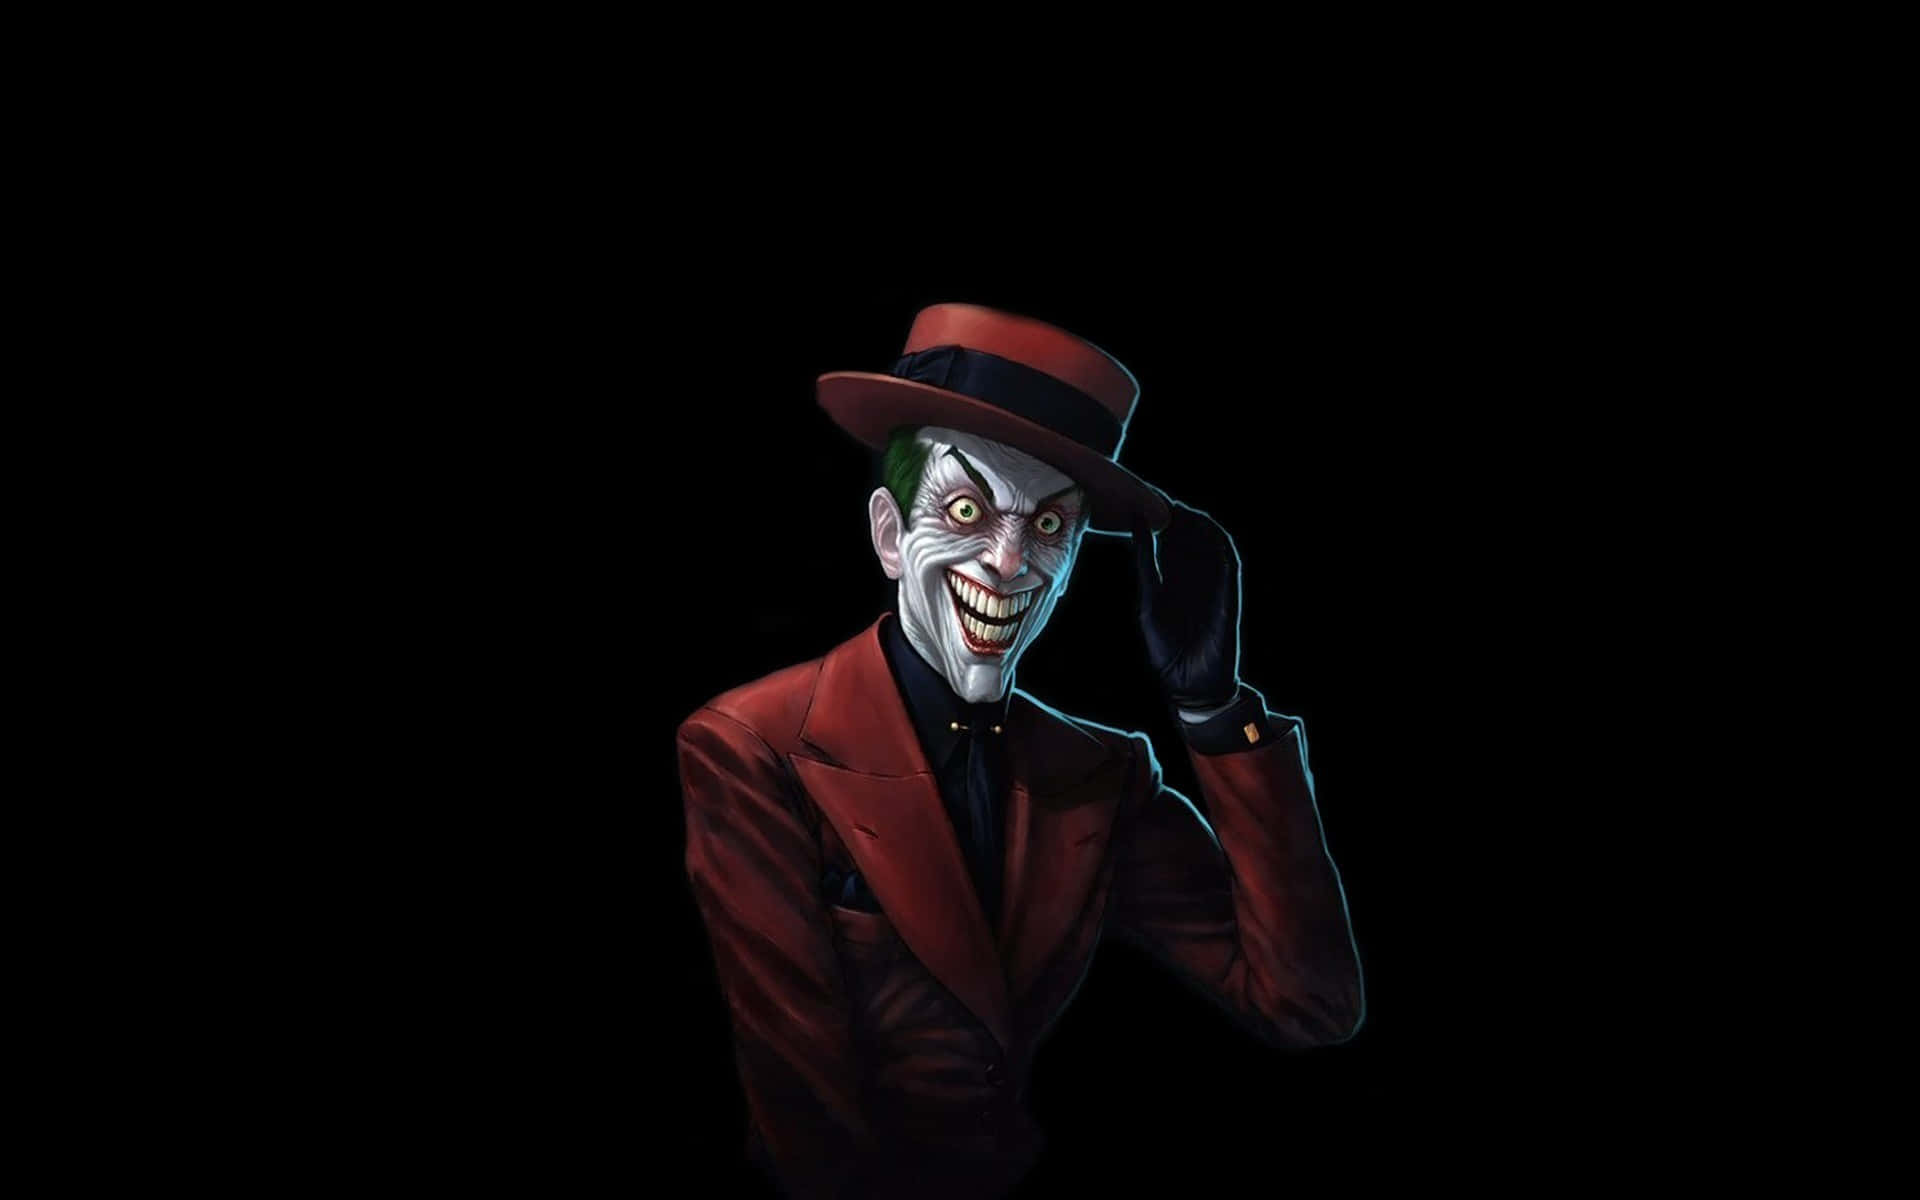 "The Joker - Bane of Gotham City" Wallpaper